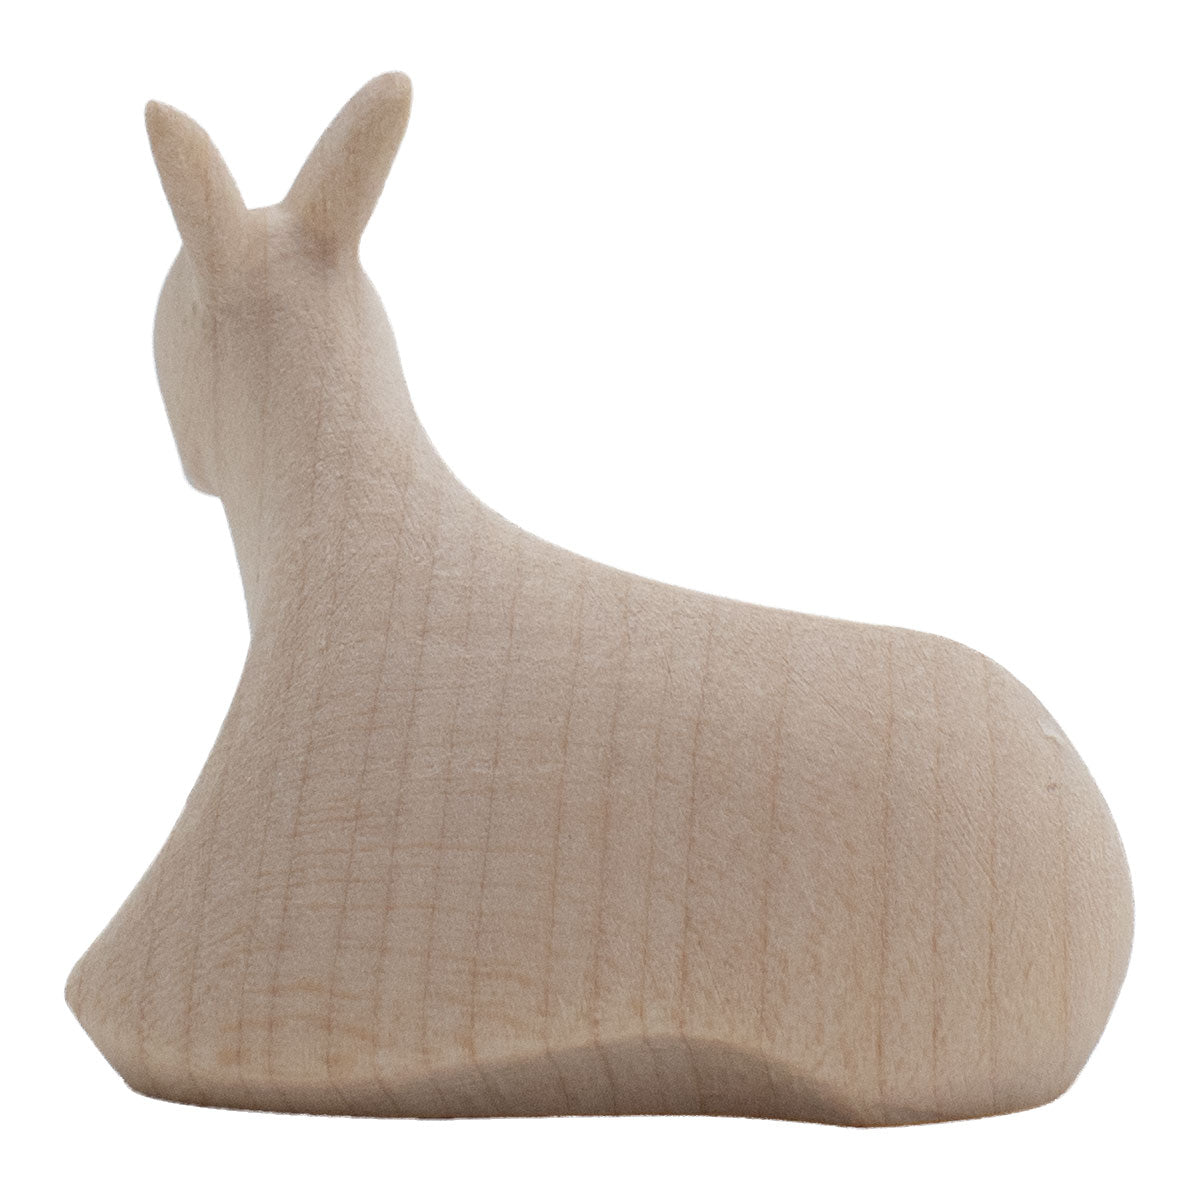 Krippenfigur ‘Esel’ | Ahorn natur | in verschiedenen Größen | Made in Südtirol